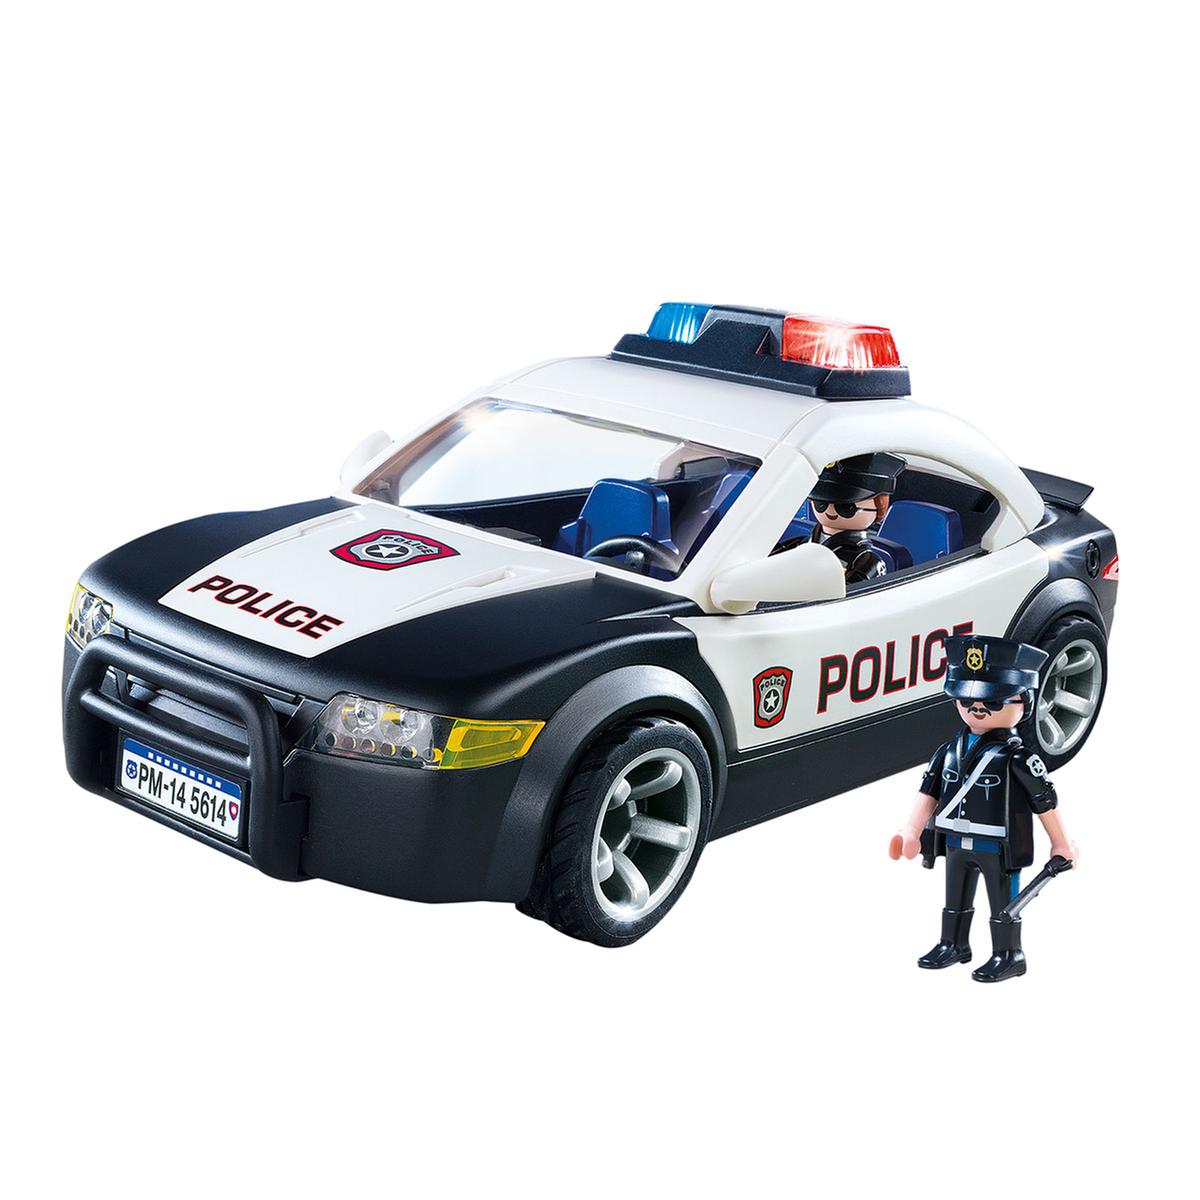 Playmobil - Coche Policía Cruiser - 5673, City Action Policia